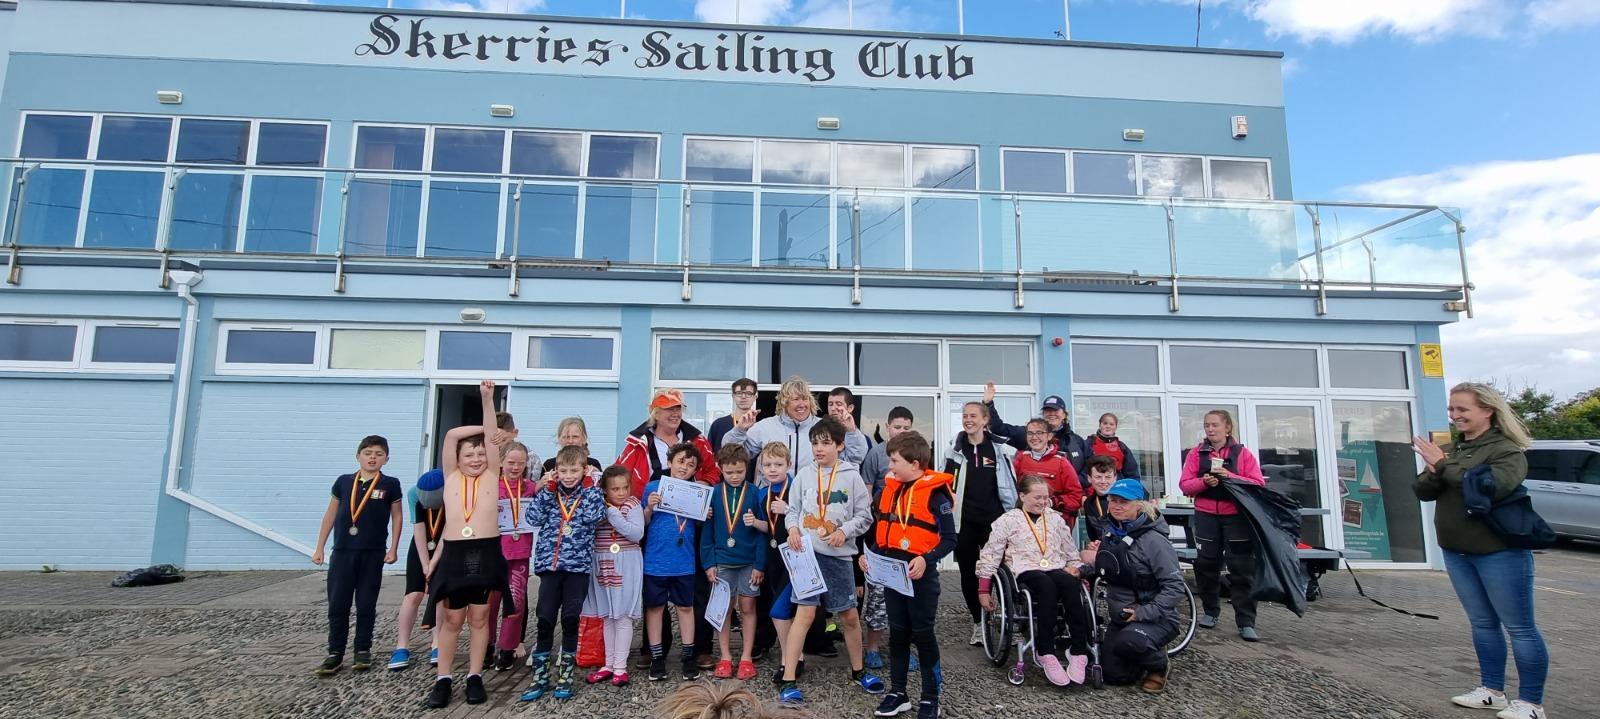 Skerries Sailing Club